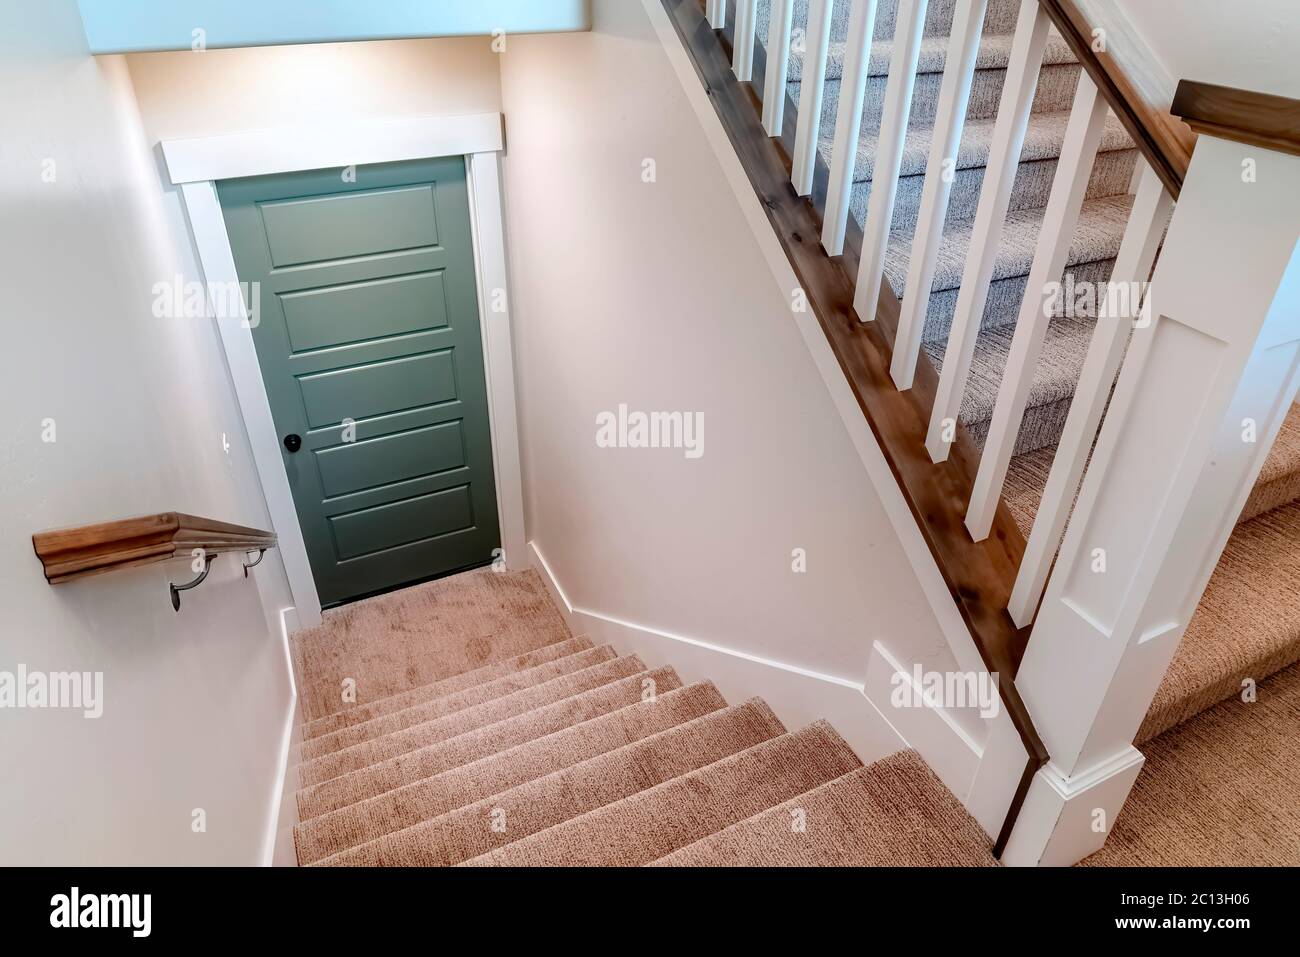 Escalier en U recouvert de moquette qui mène à la porte du sous-sol d'une maison Banque D'Images